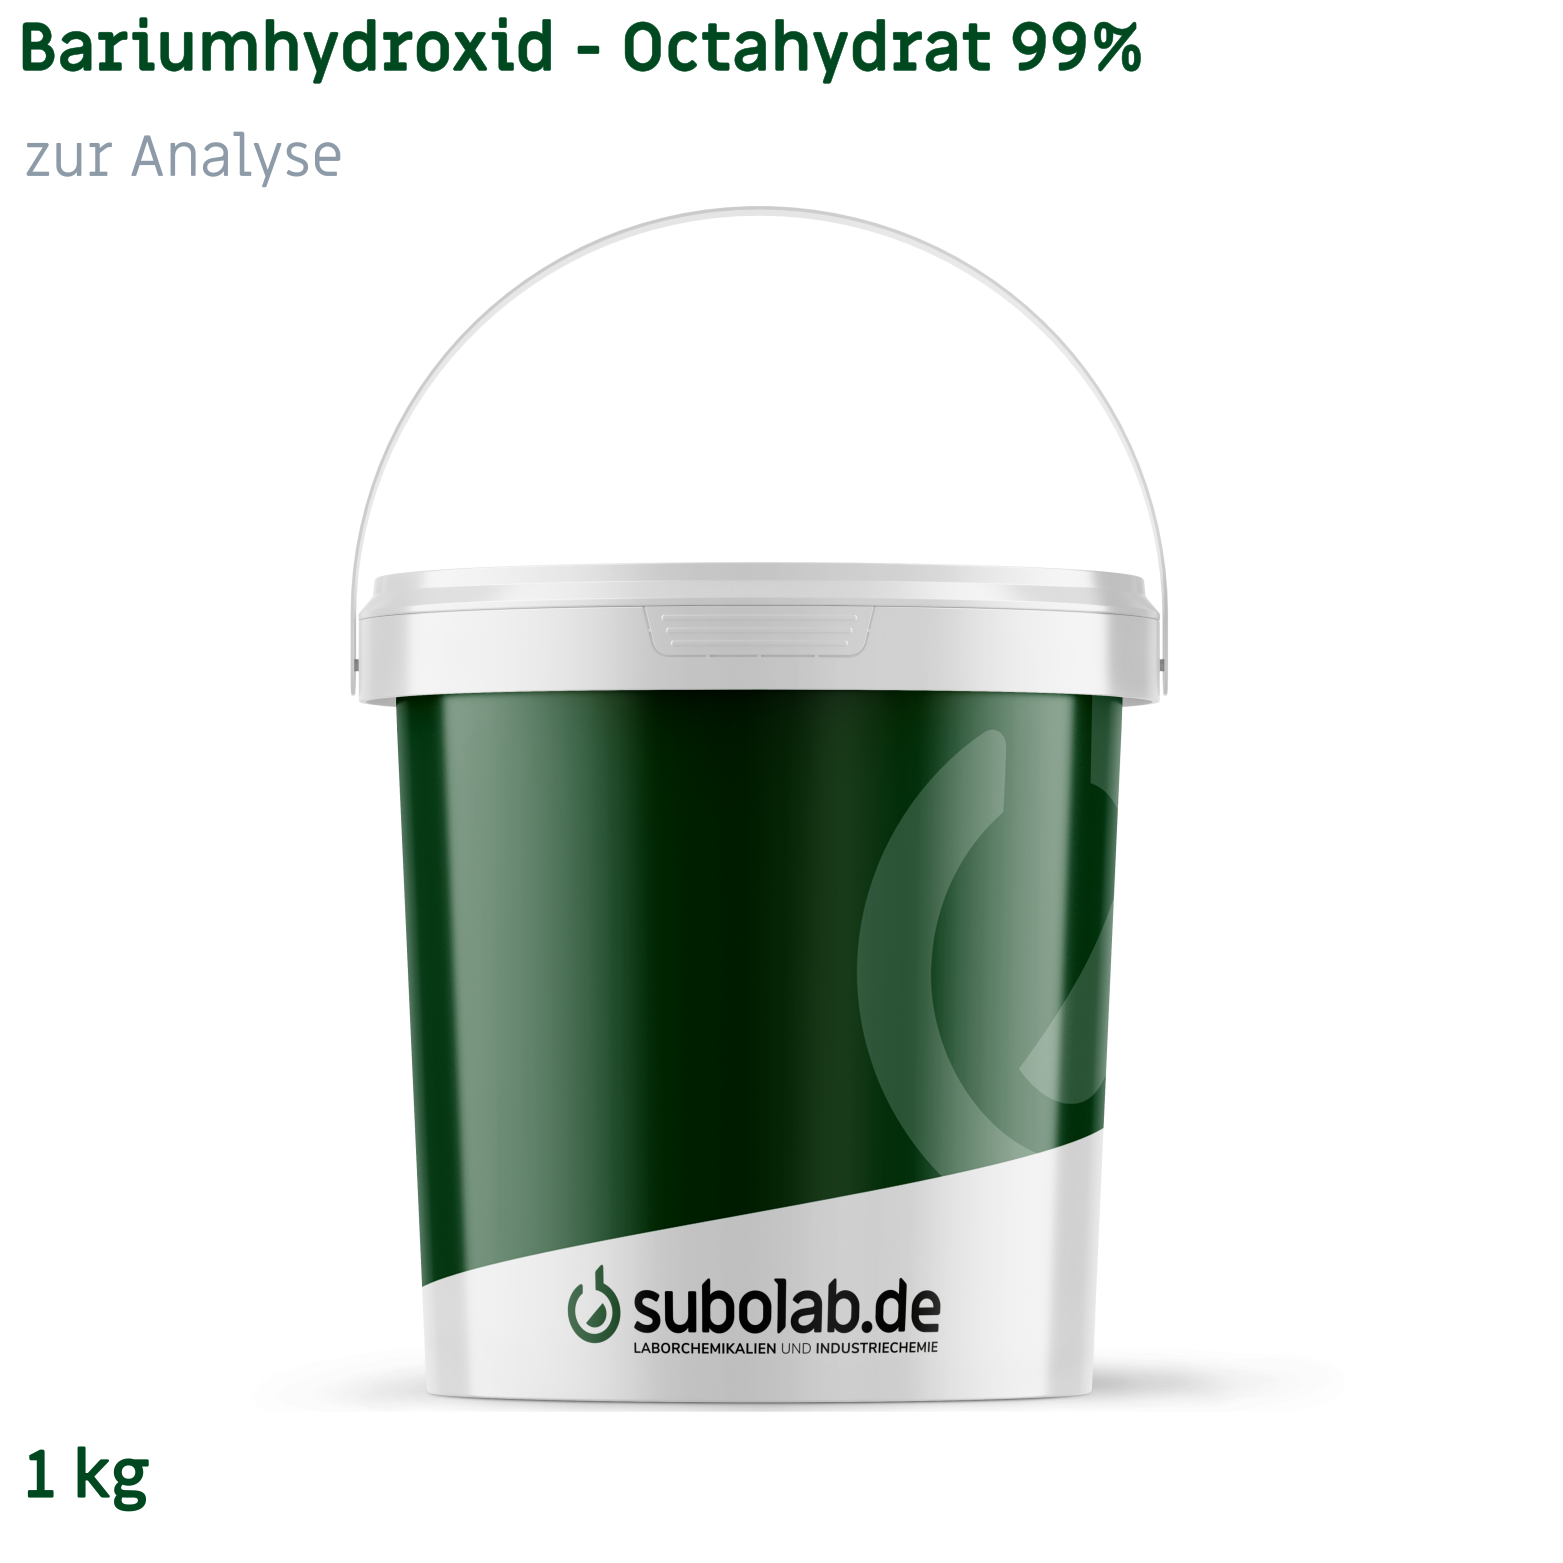 Bild von Bariumhydroxid - Octahydrat 99% zur Analyse (1 kg)